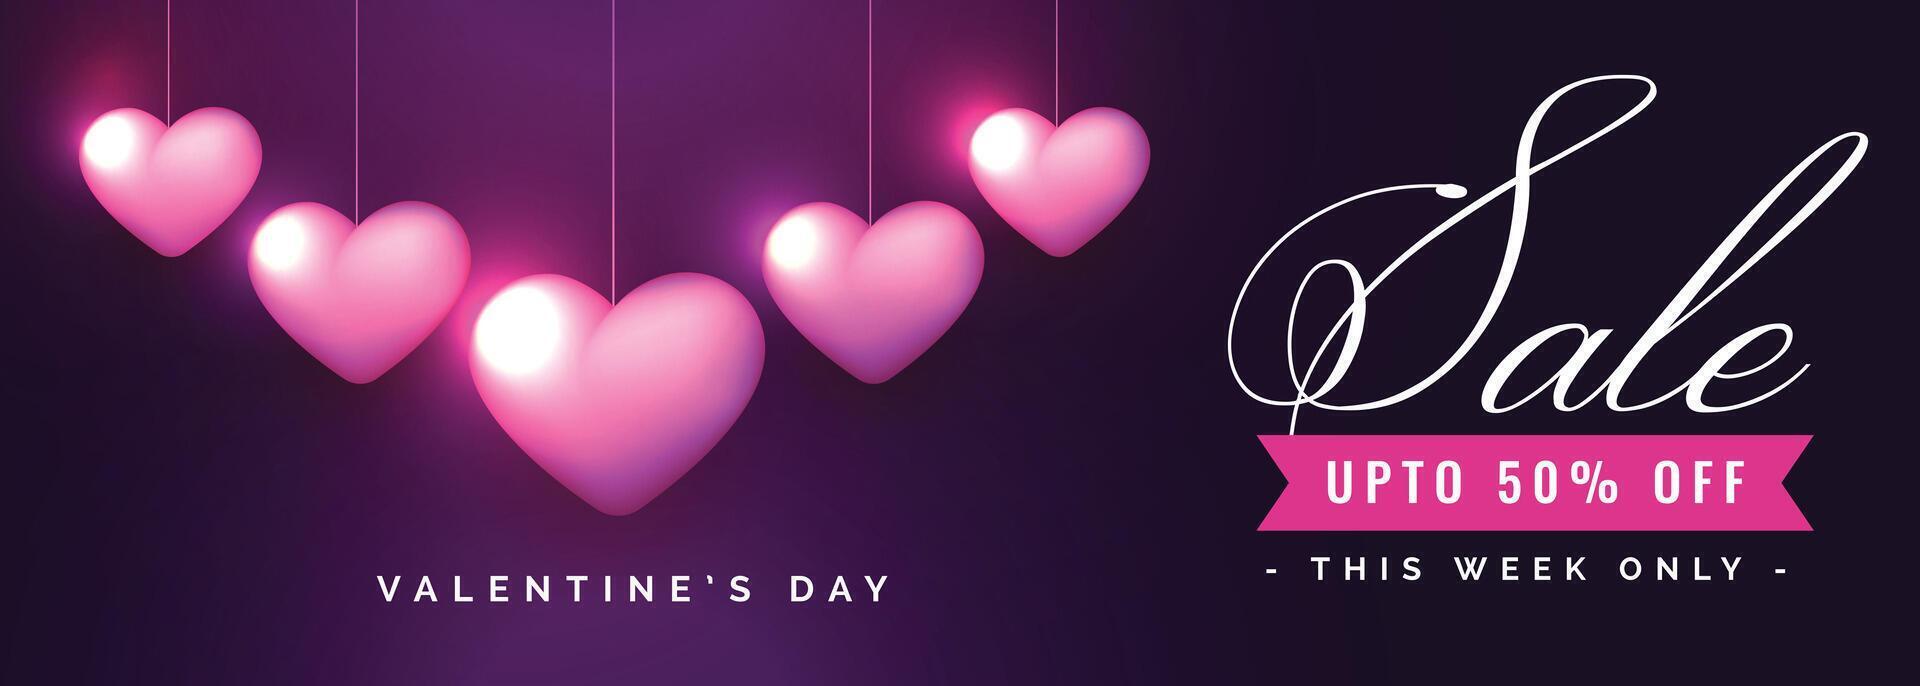 valentines dag försäljning baner med romantisk hjärtan vektor